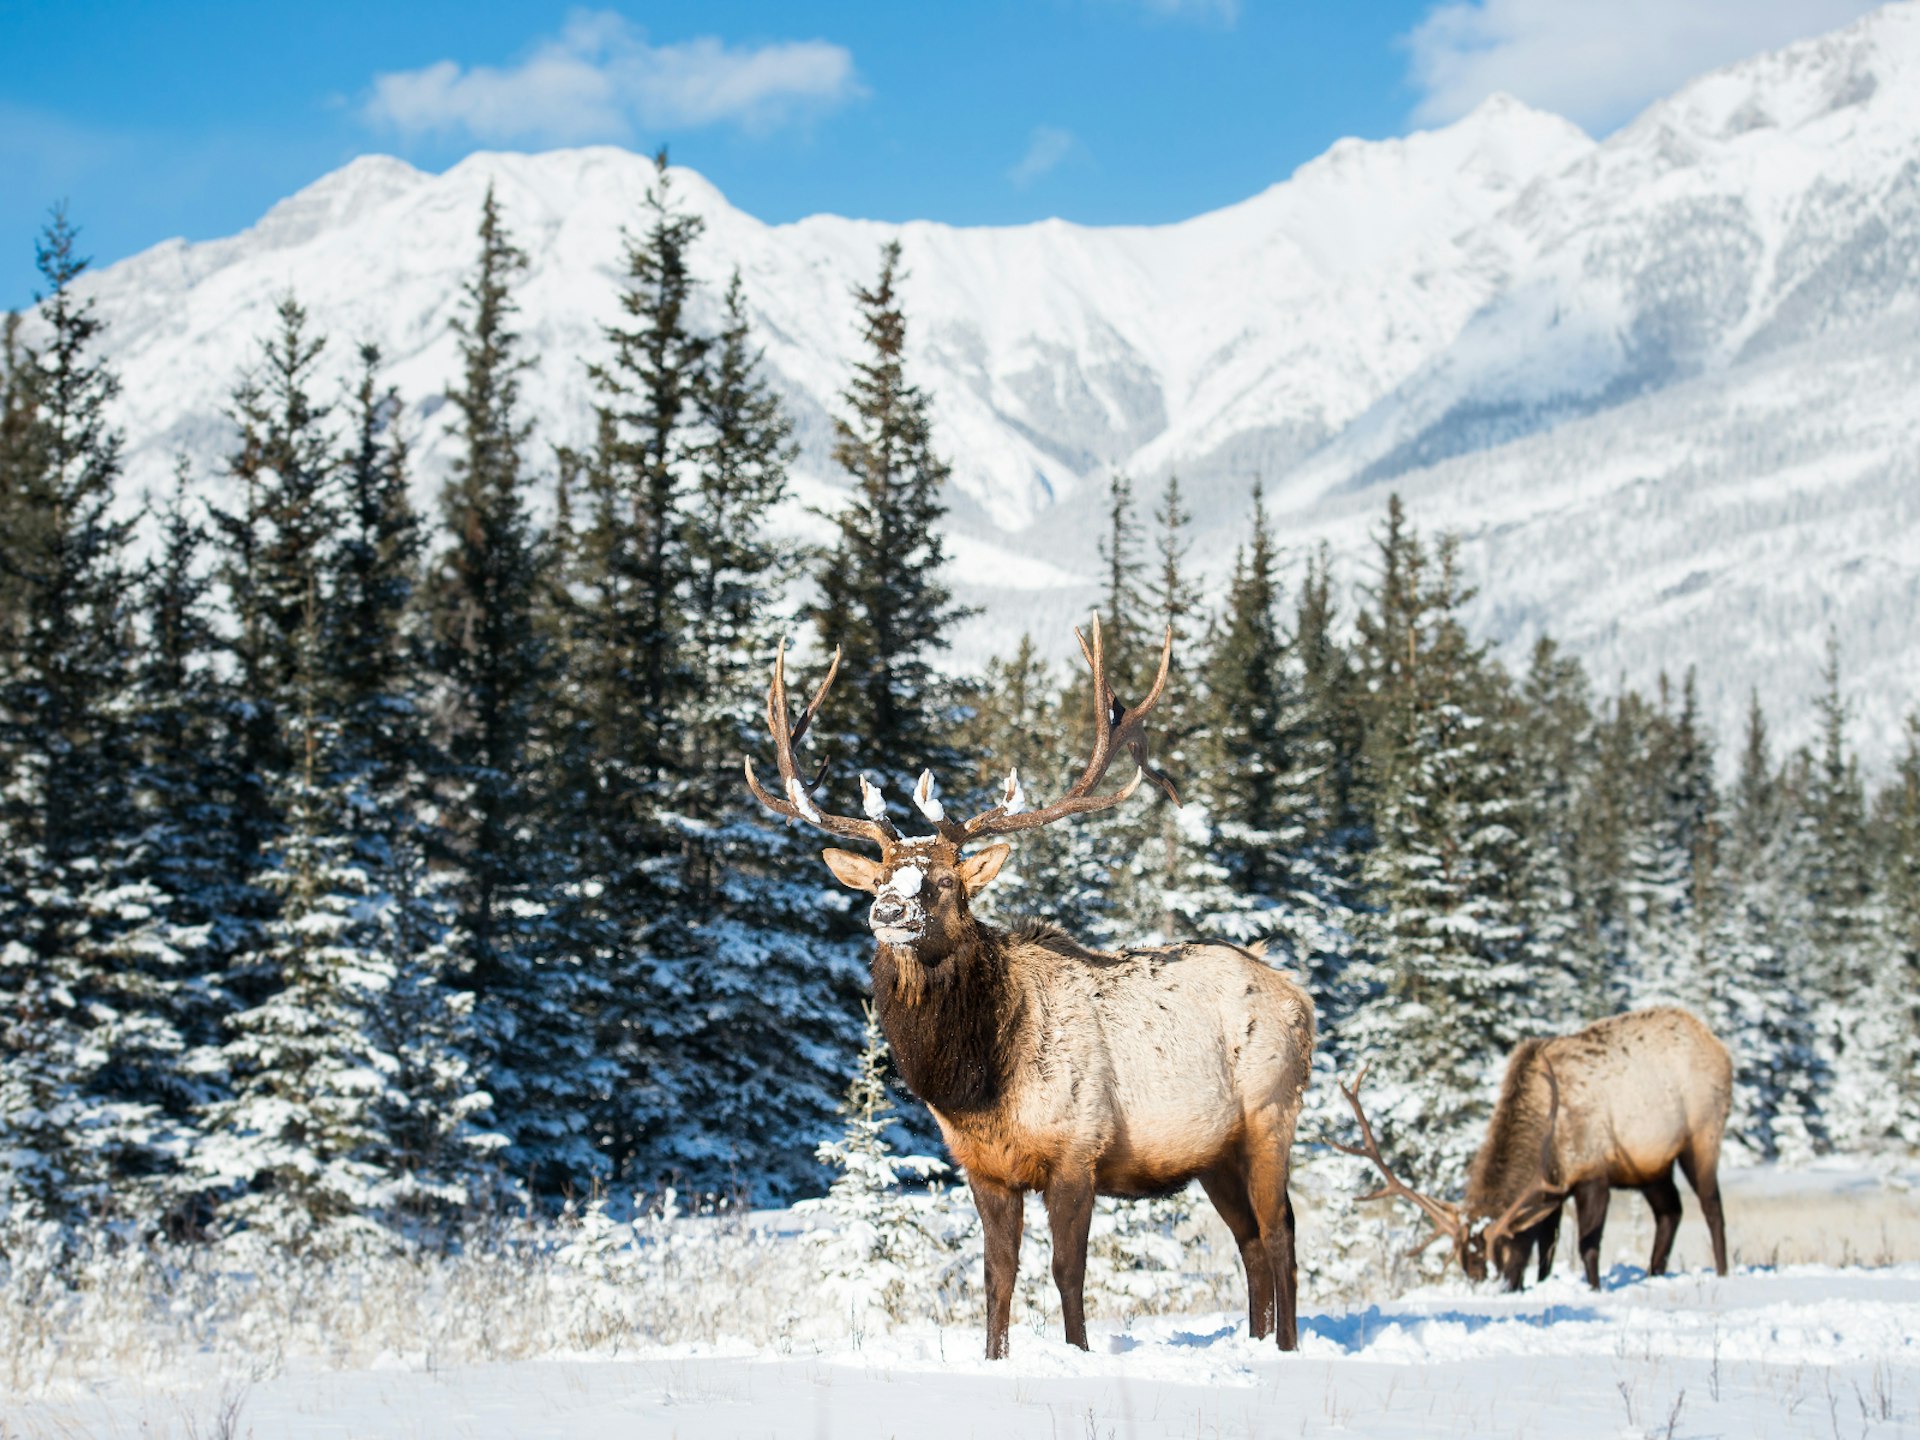 Two elk grazing in snowy Alberta, Canada